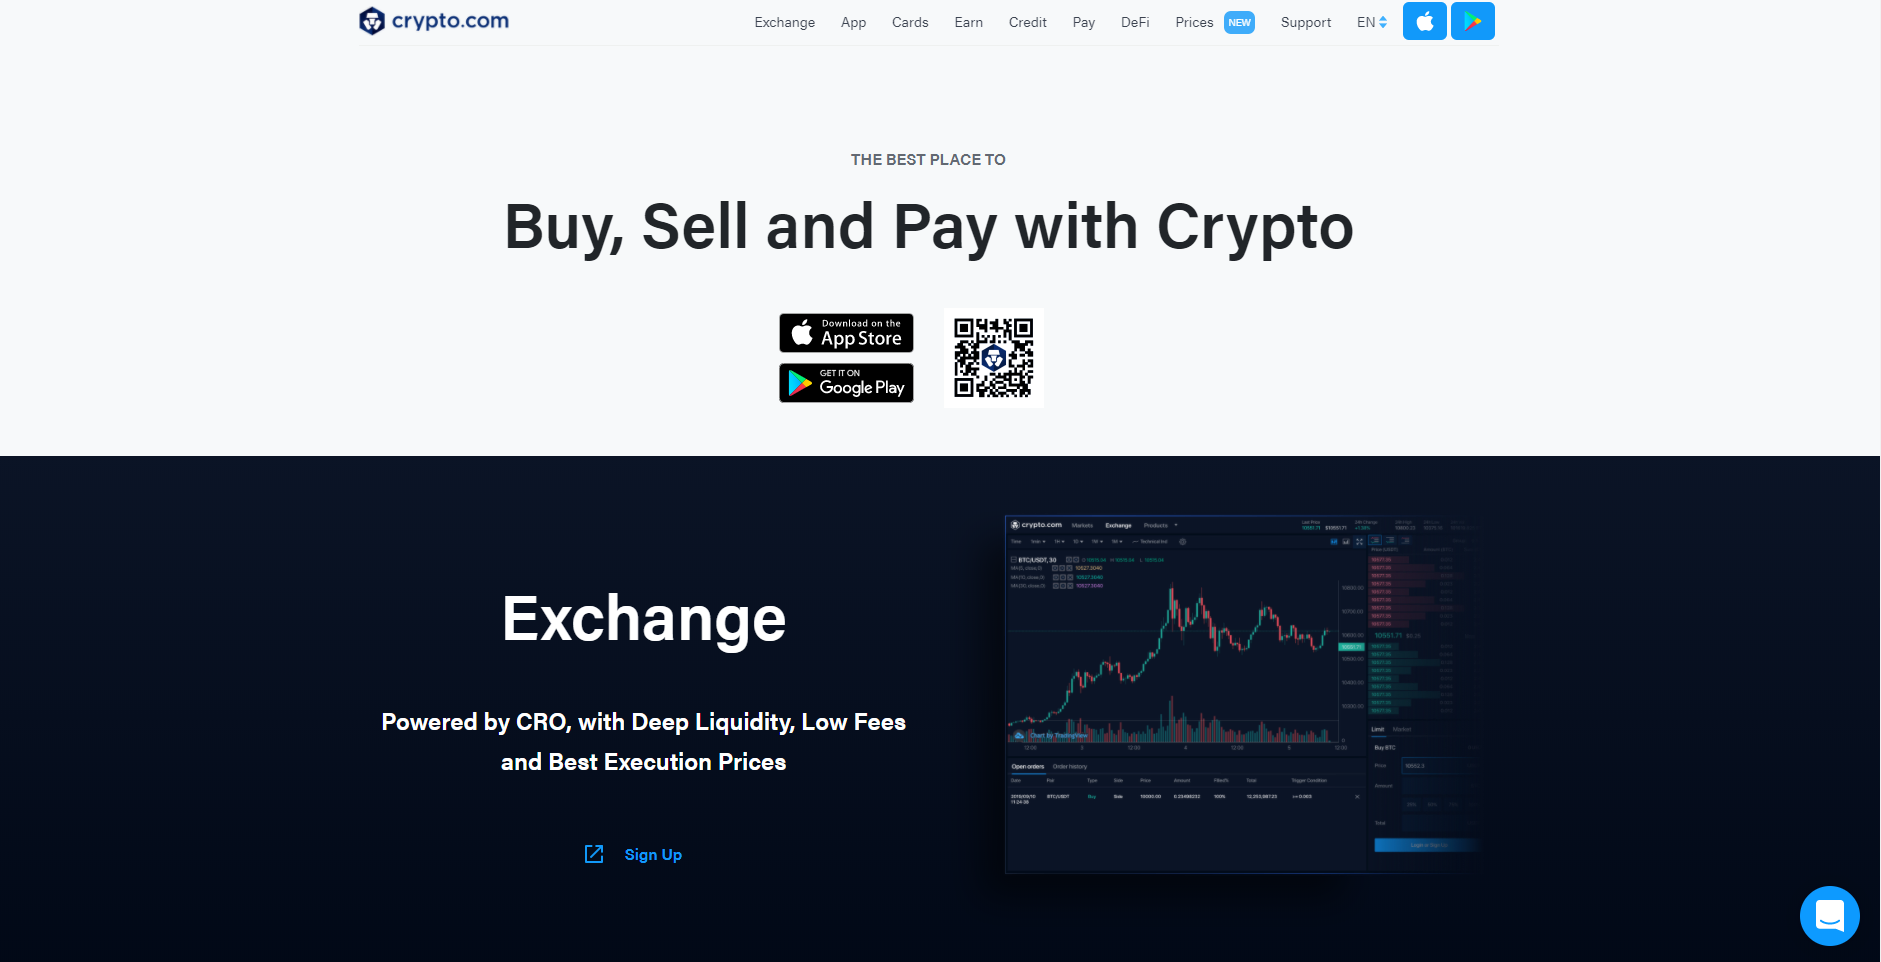 Crypto.com cryptocurrency exchange